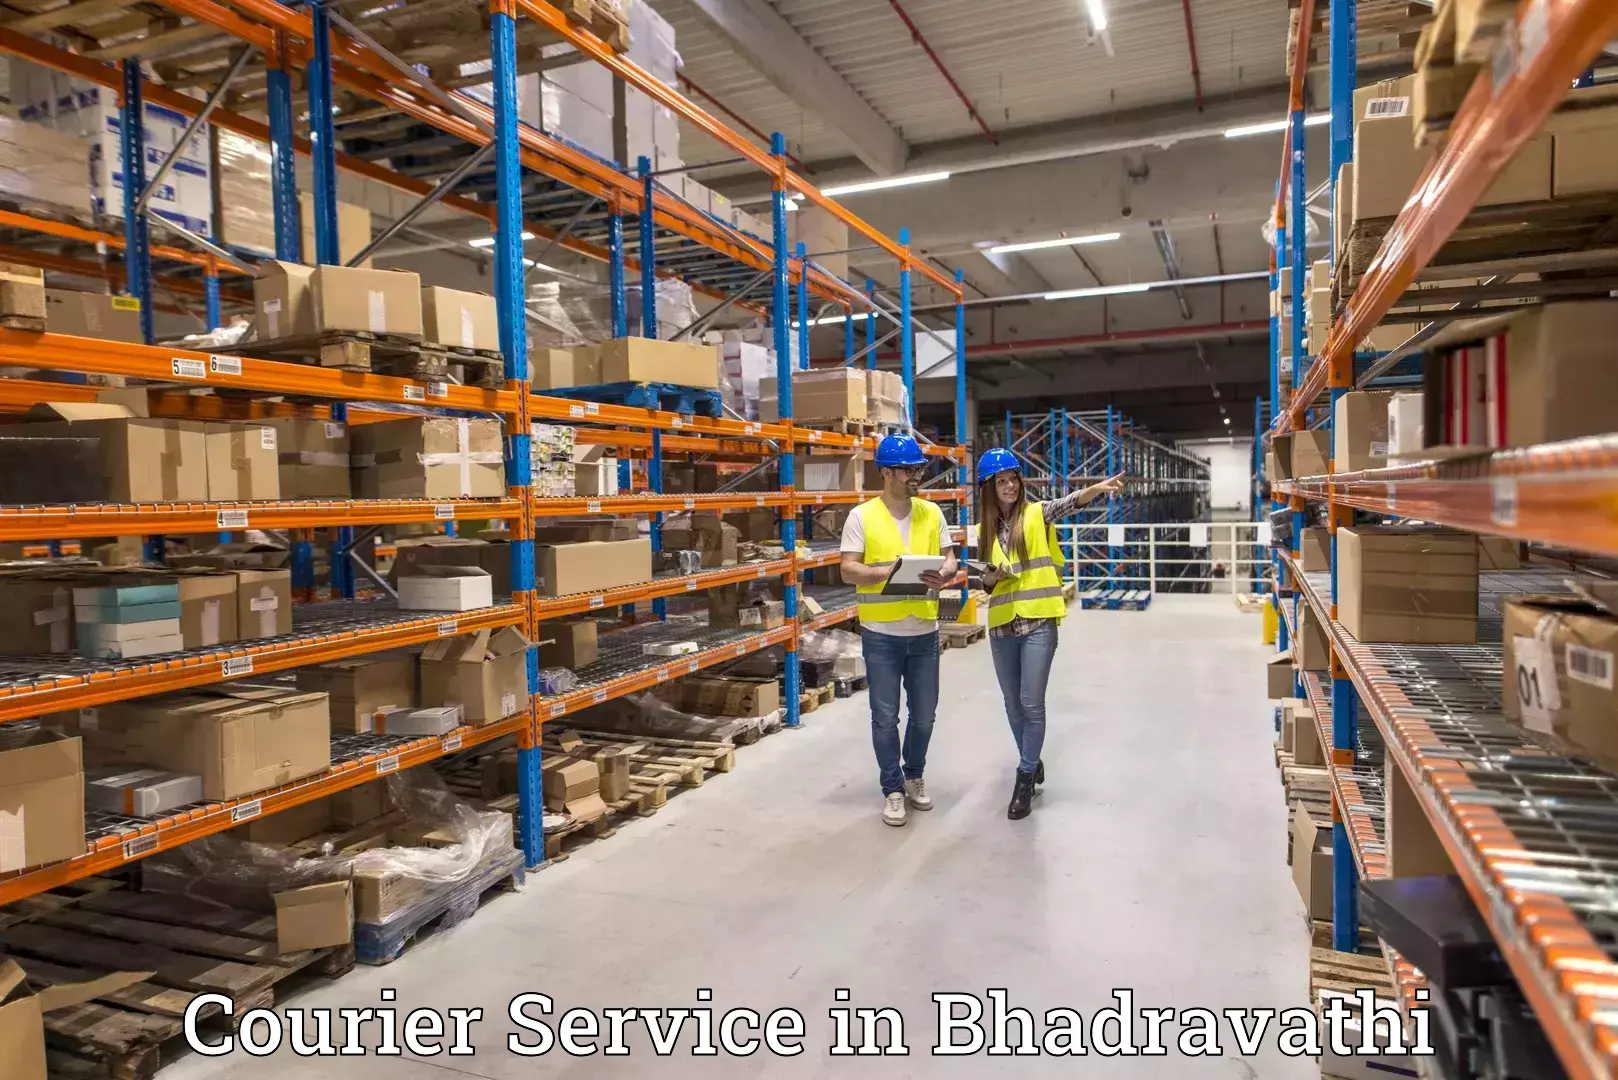 Premium delivery services in Bhadravathi